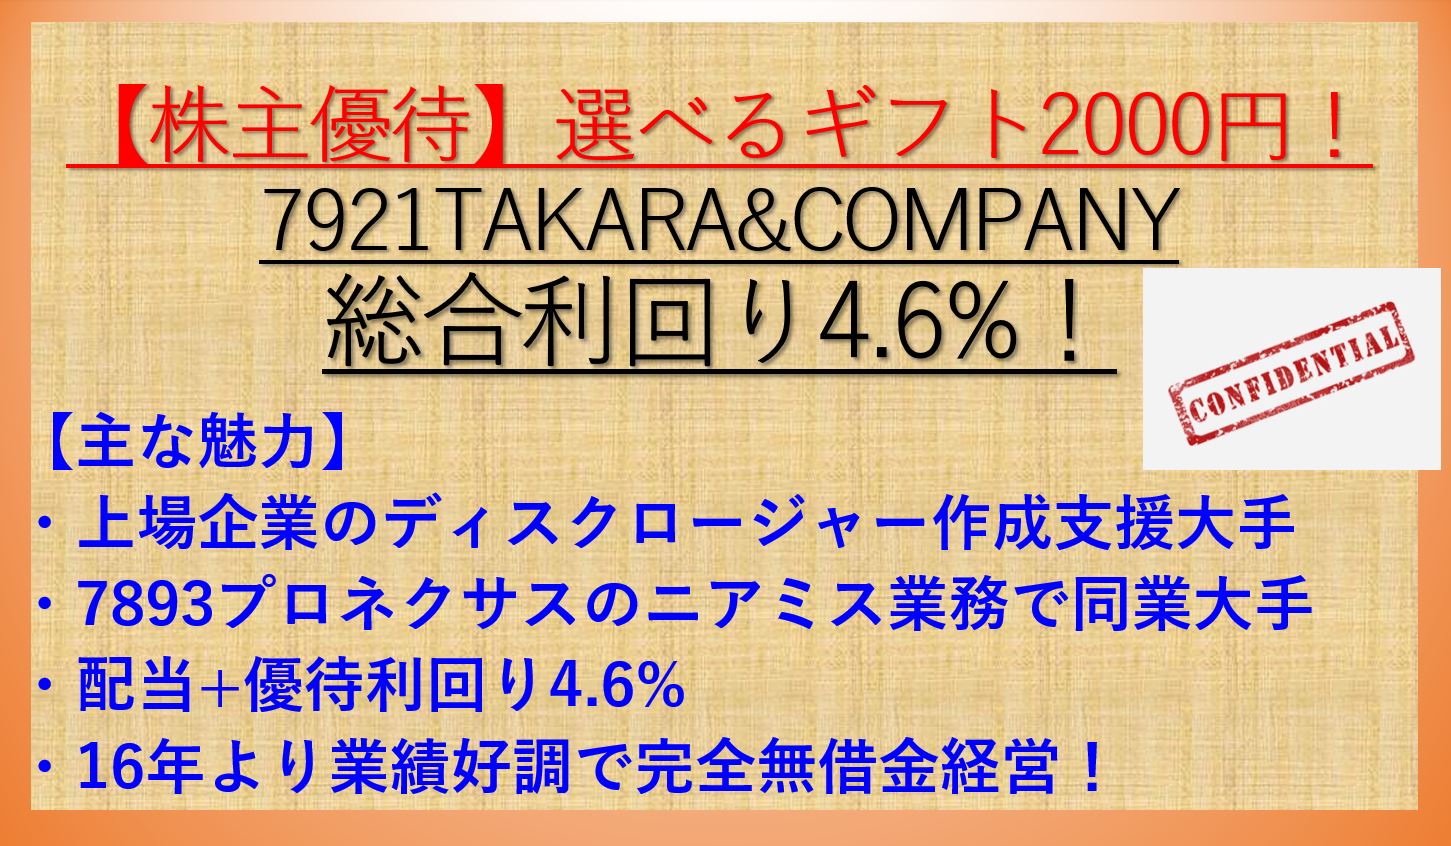 7921-TAKARA&COMPANY-アイキャッチ